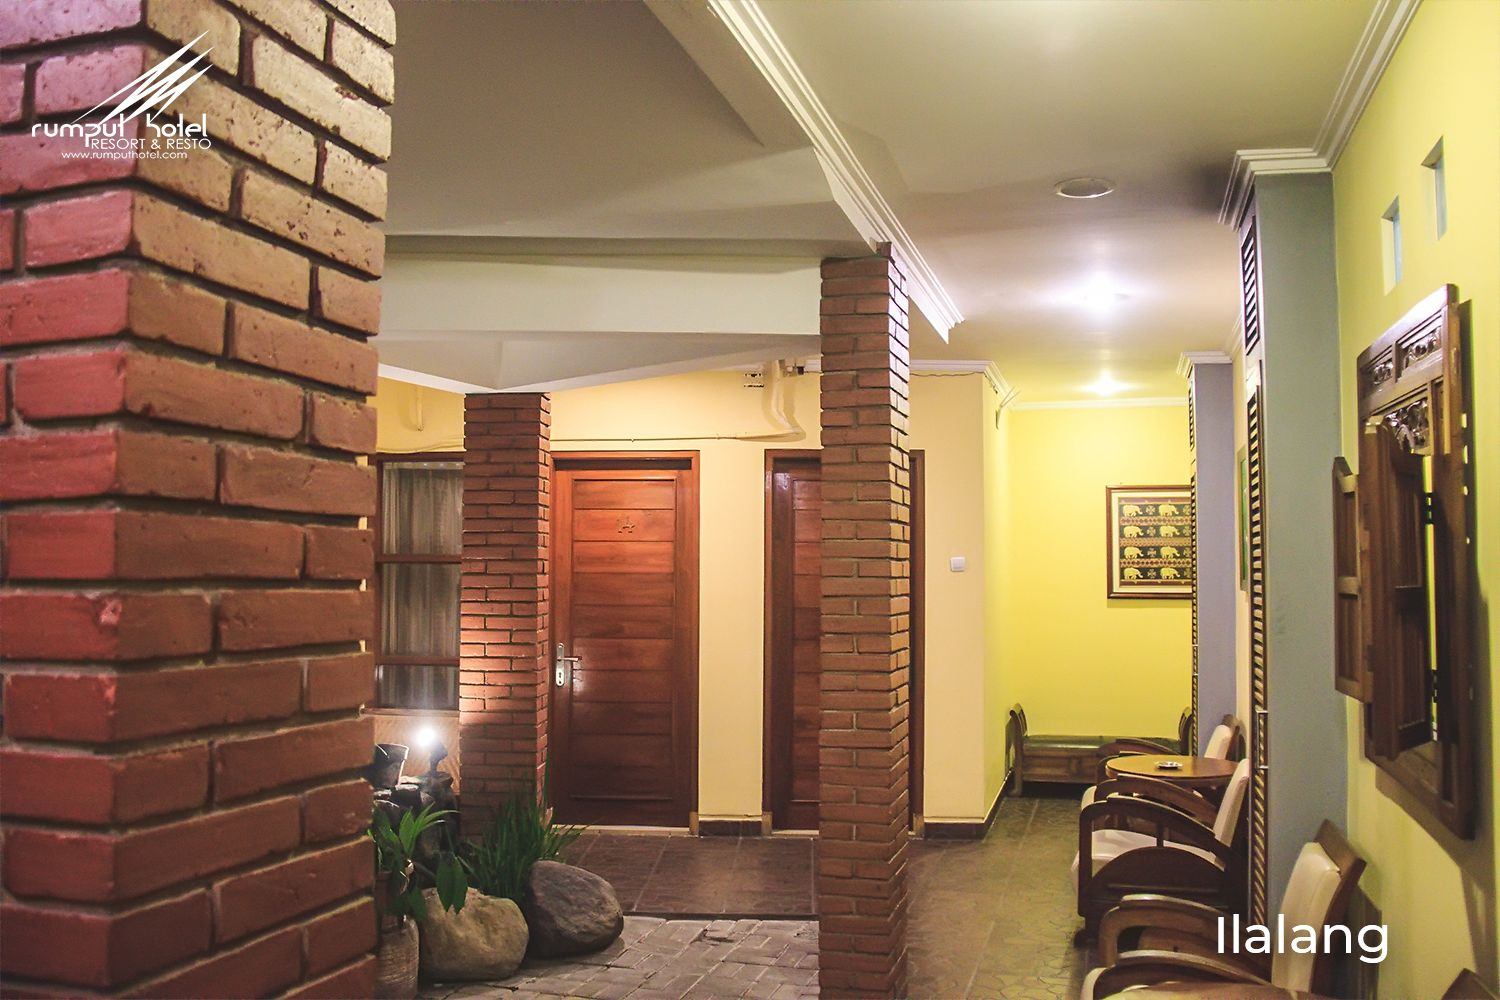 Exterior & Views 2, Rumput Hotel Resort & Resto Yogyakarta, Yogyakarta